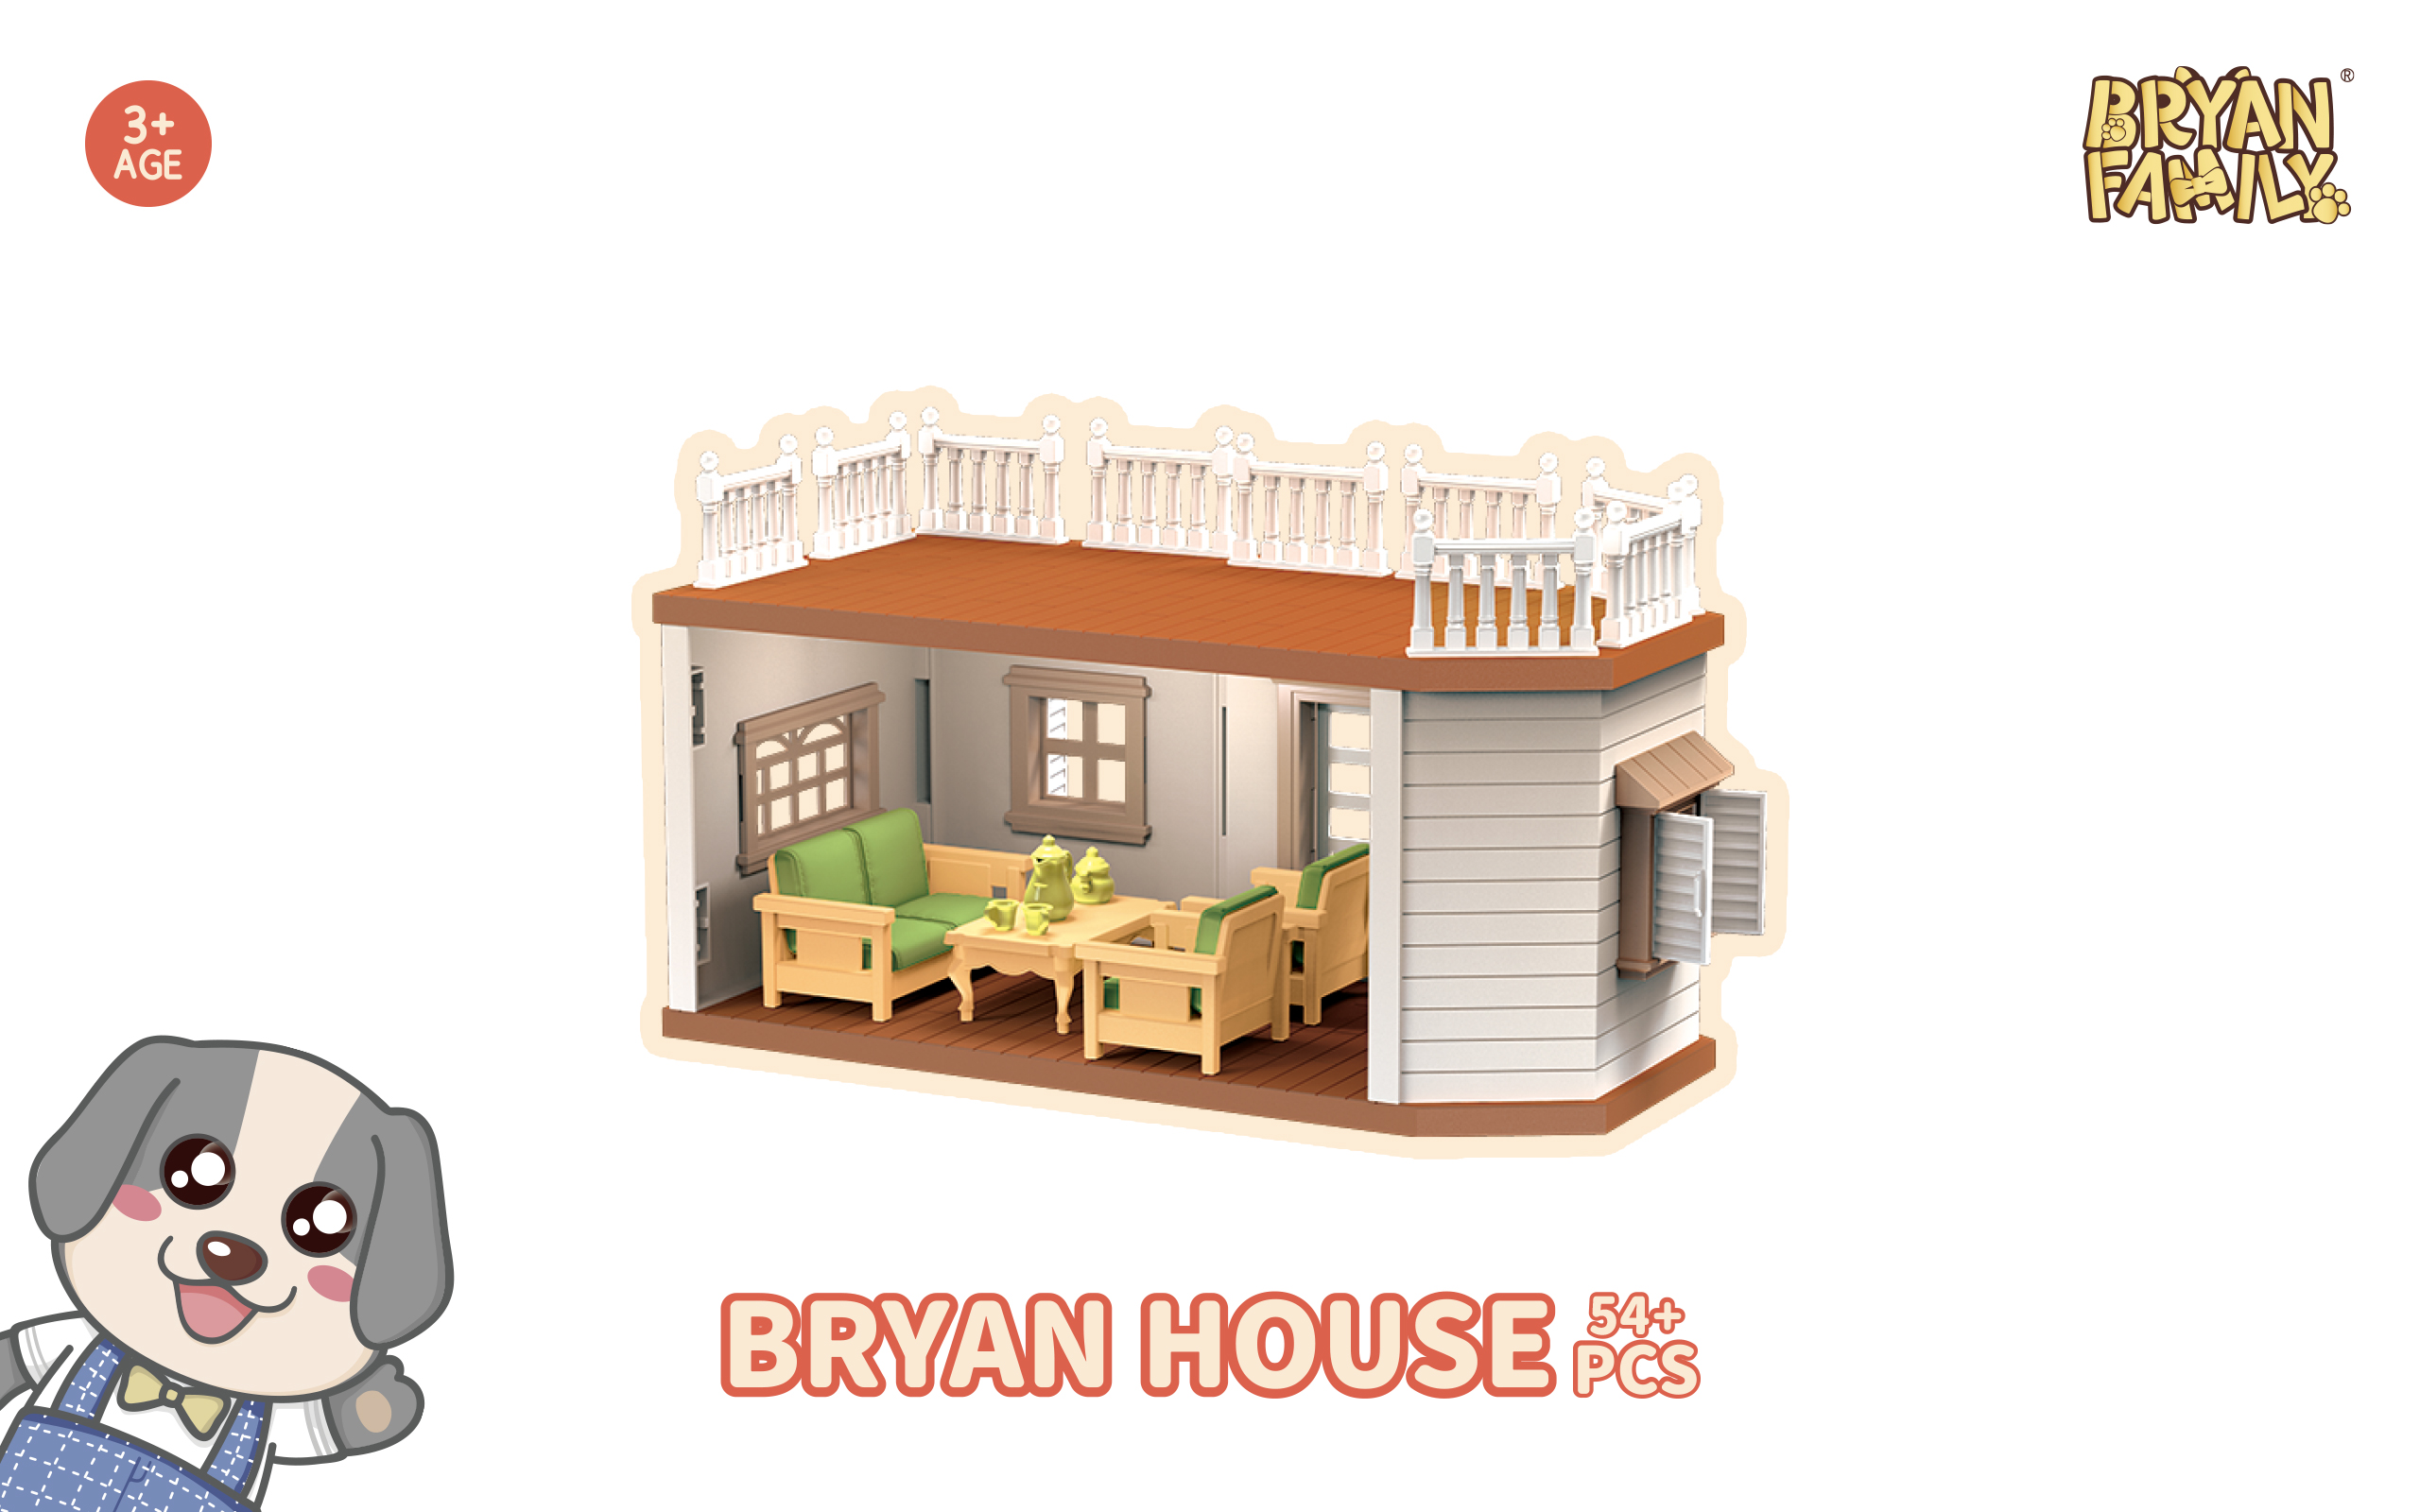 Bryan House 54+PCS